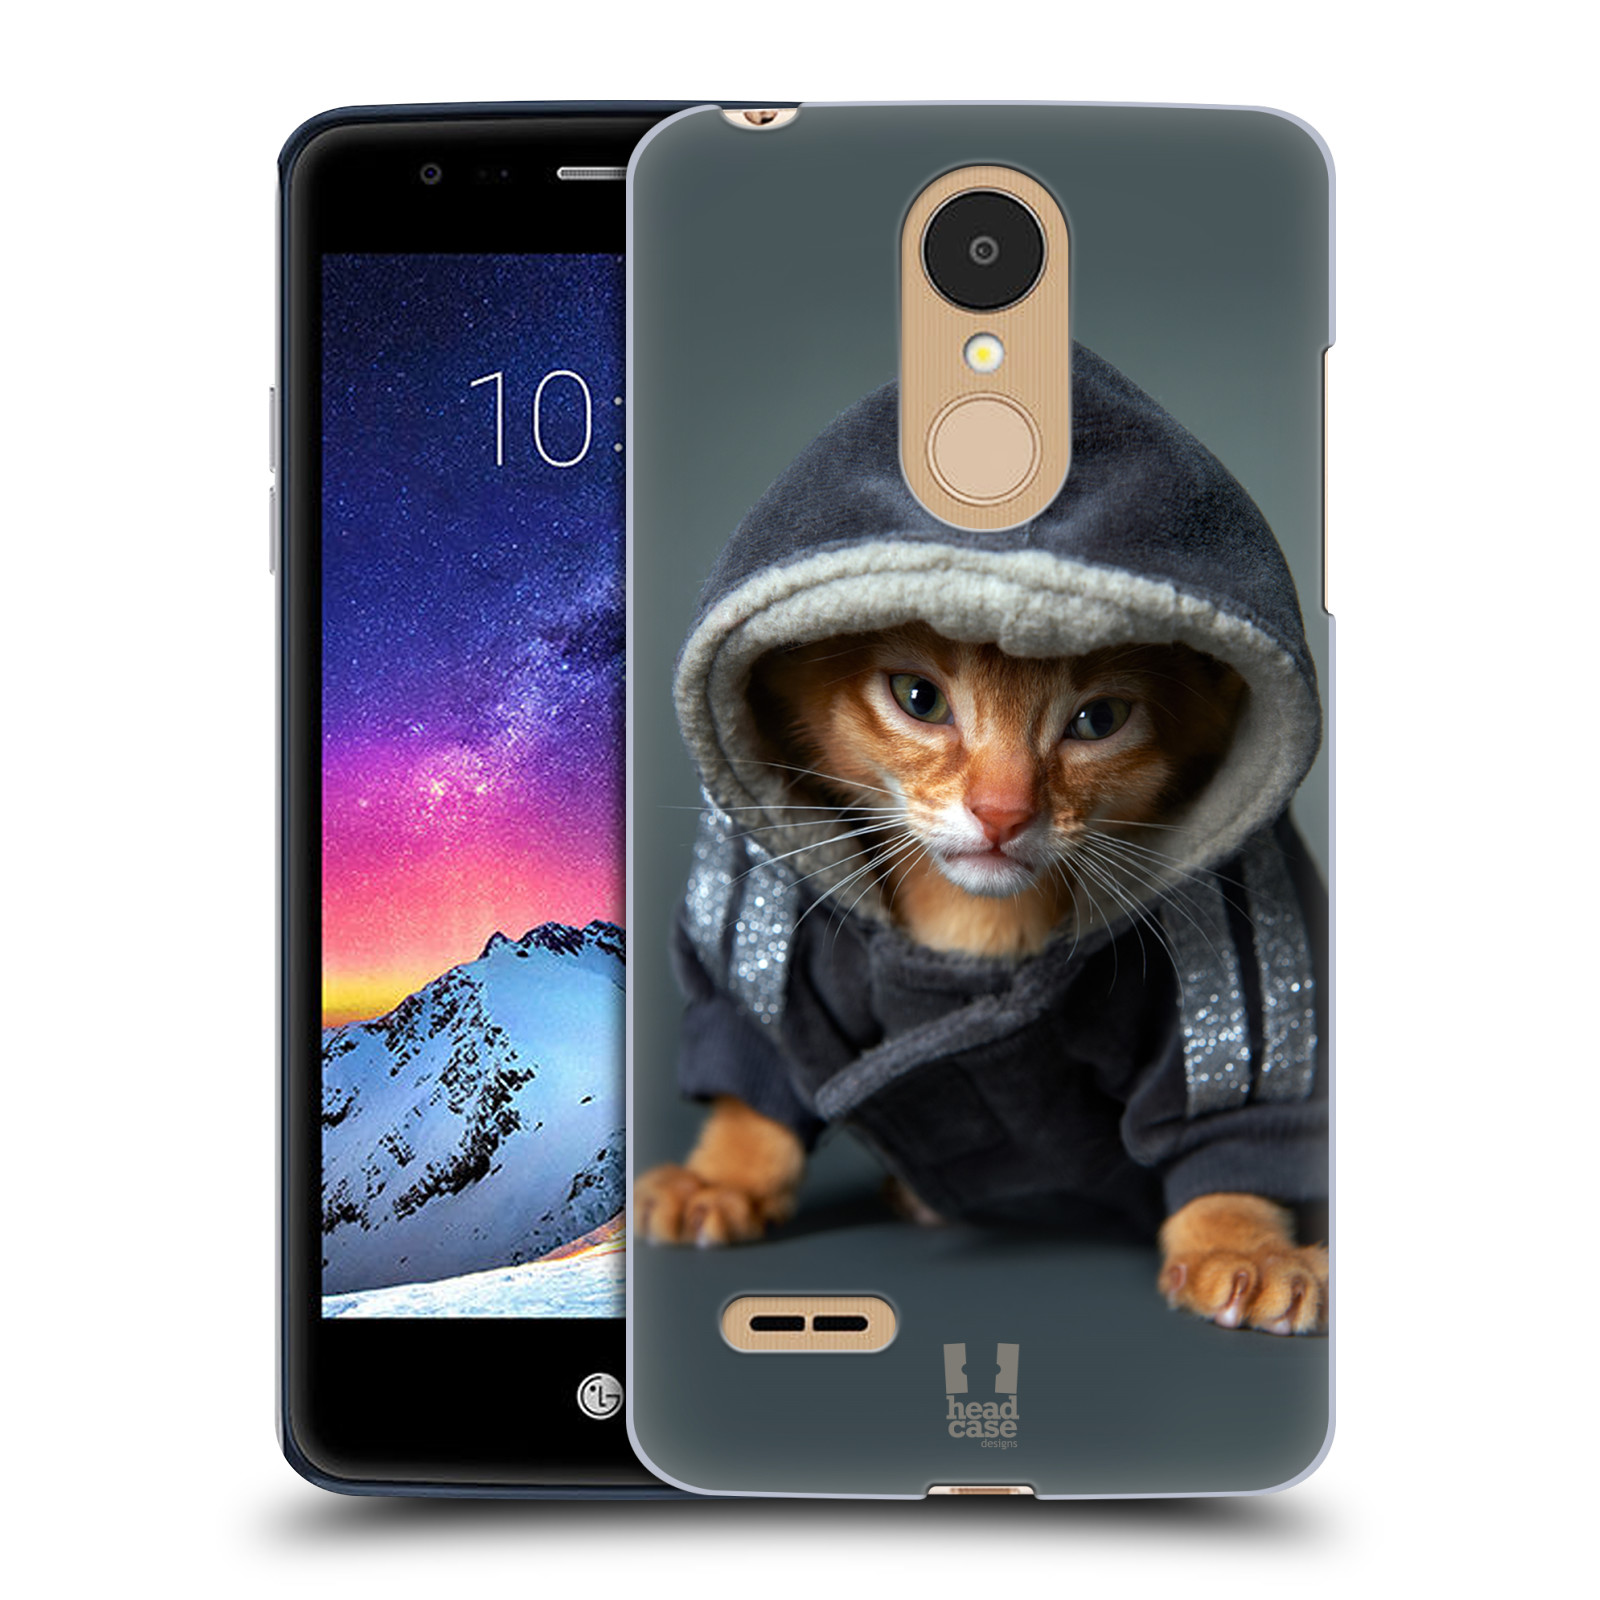 HEAD CASE plastový obal na mobil LG K9 / K8 2018 vzor Legrační zvířátka kotě/kočička s kapucí